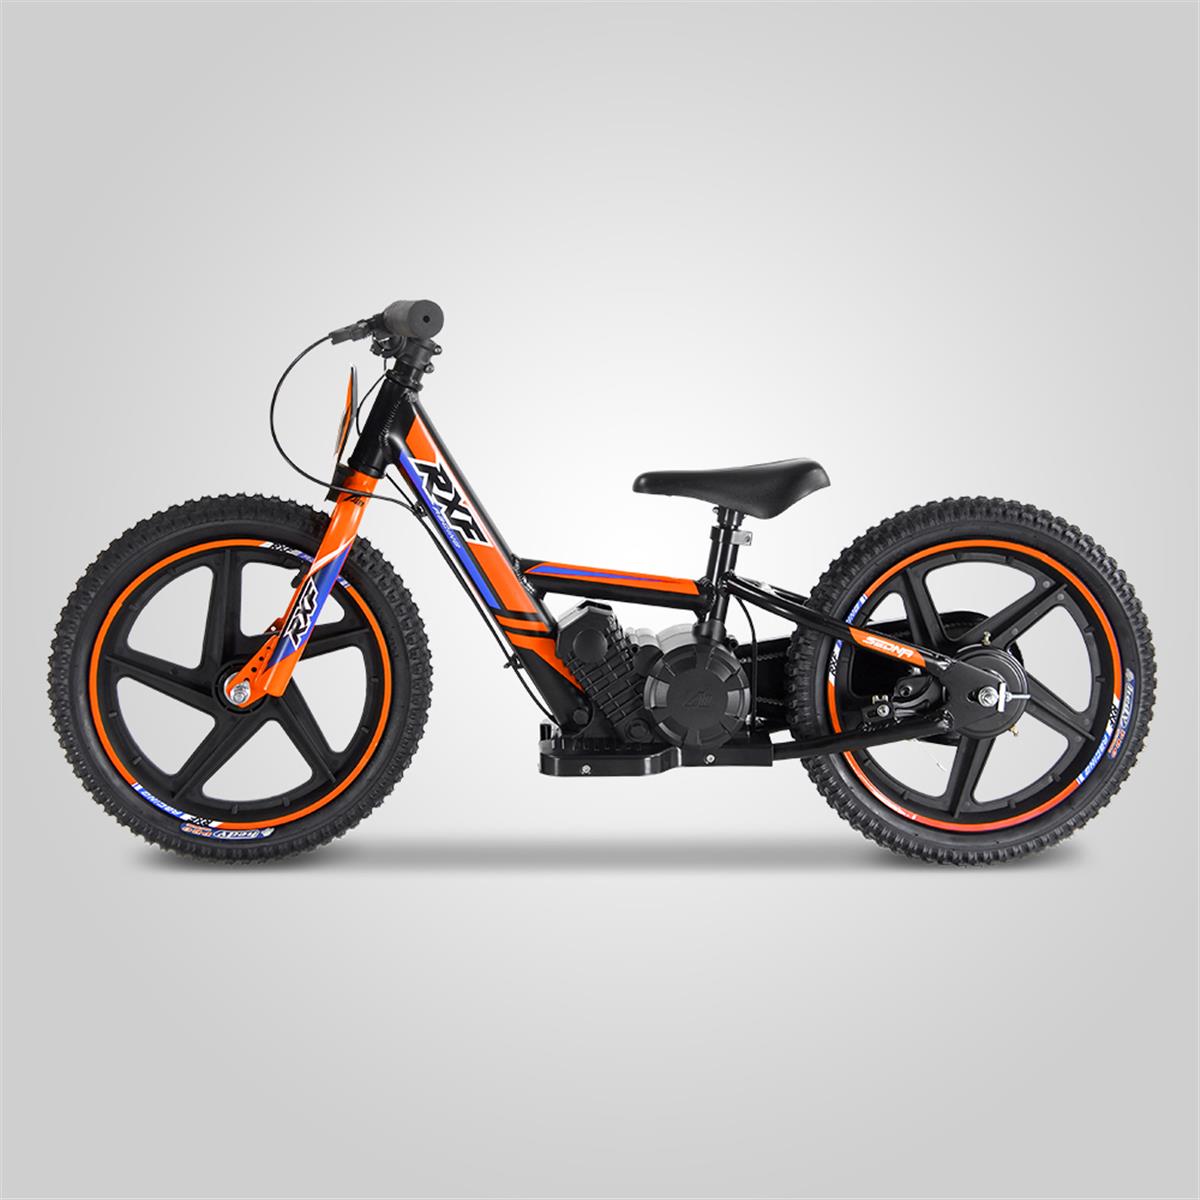 Draisienne électrique apollo rxf sedna 16" 170w, Minimoto et Dirt Bike |  Smallmx - Dirt bike, Pit bike, Quads, Minimoto